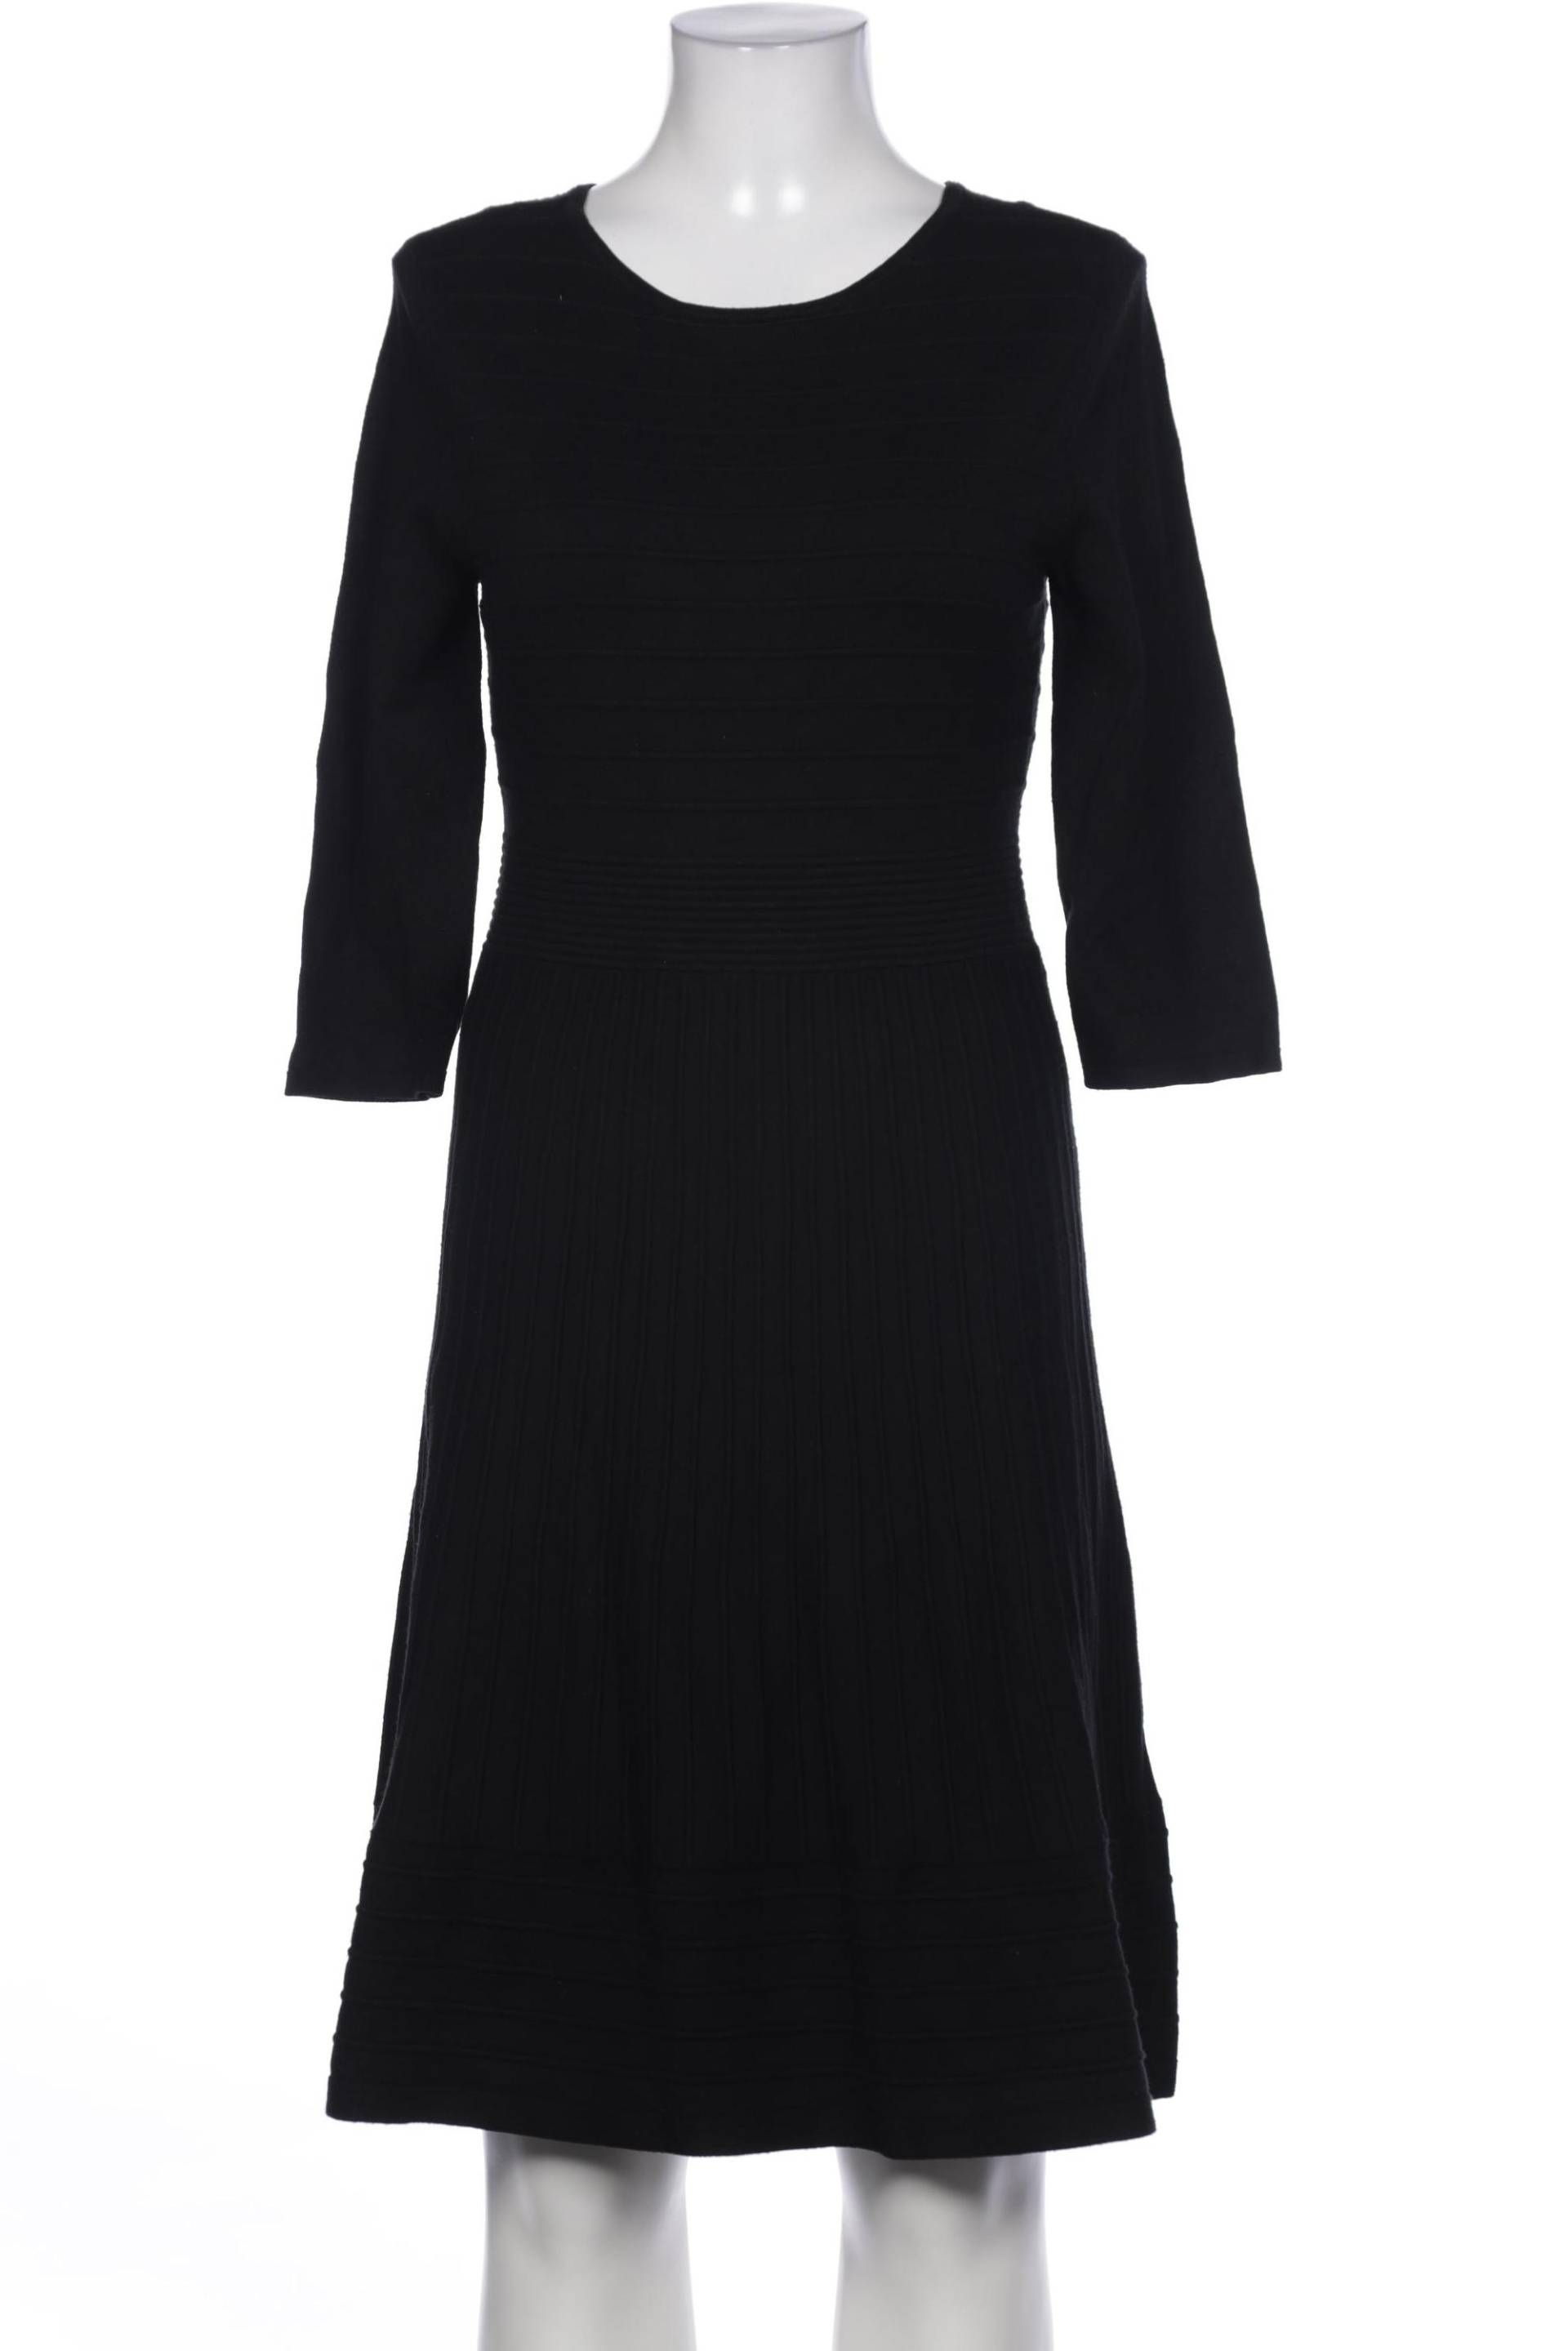 Montego Damen Kleid, schwarz, Gr. 40 von montego